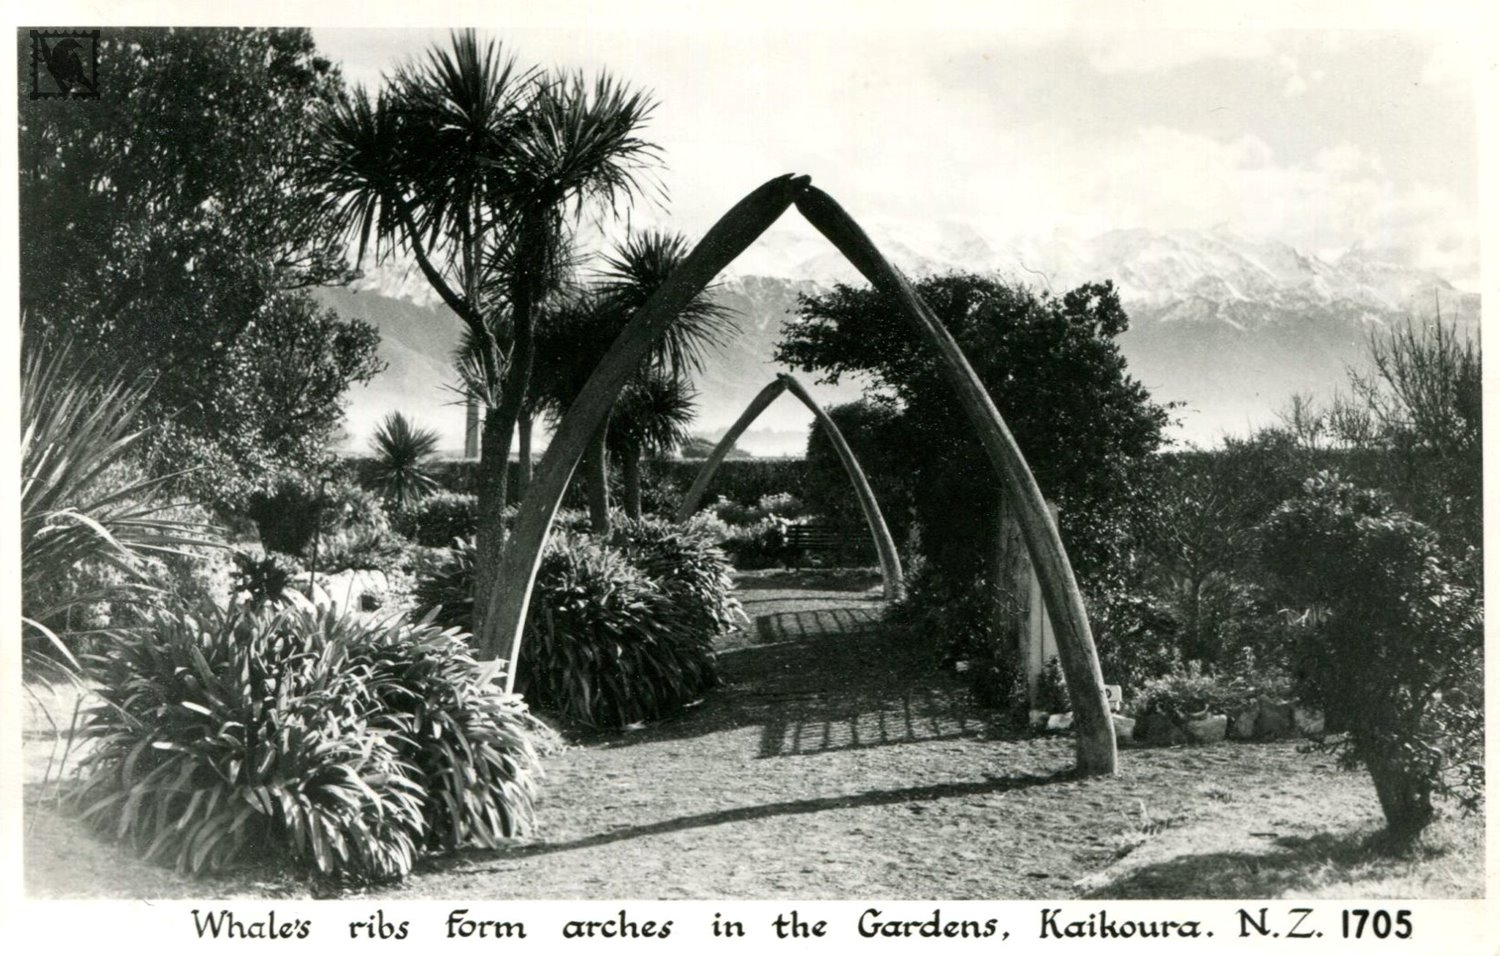 Kaikoura Gardens - Whale Rib Arches